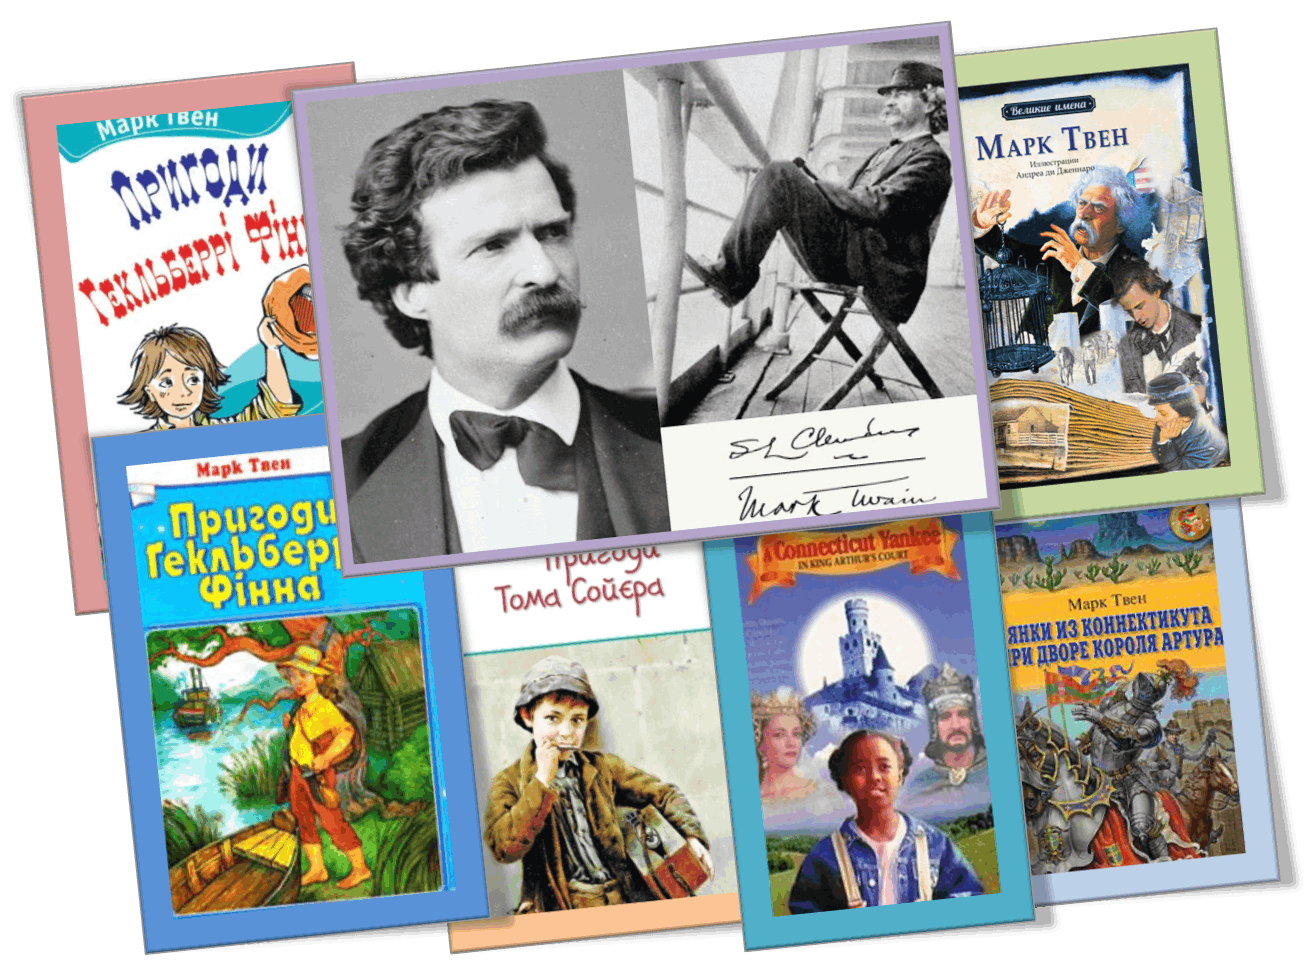 Твен писал книги для детей. Произведения м Твена список для детей. Рассказы марка Твена для детей список.